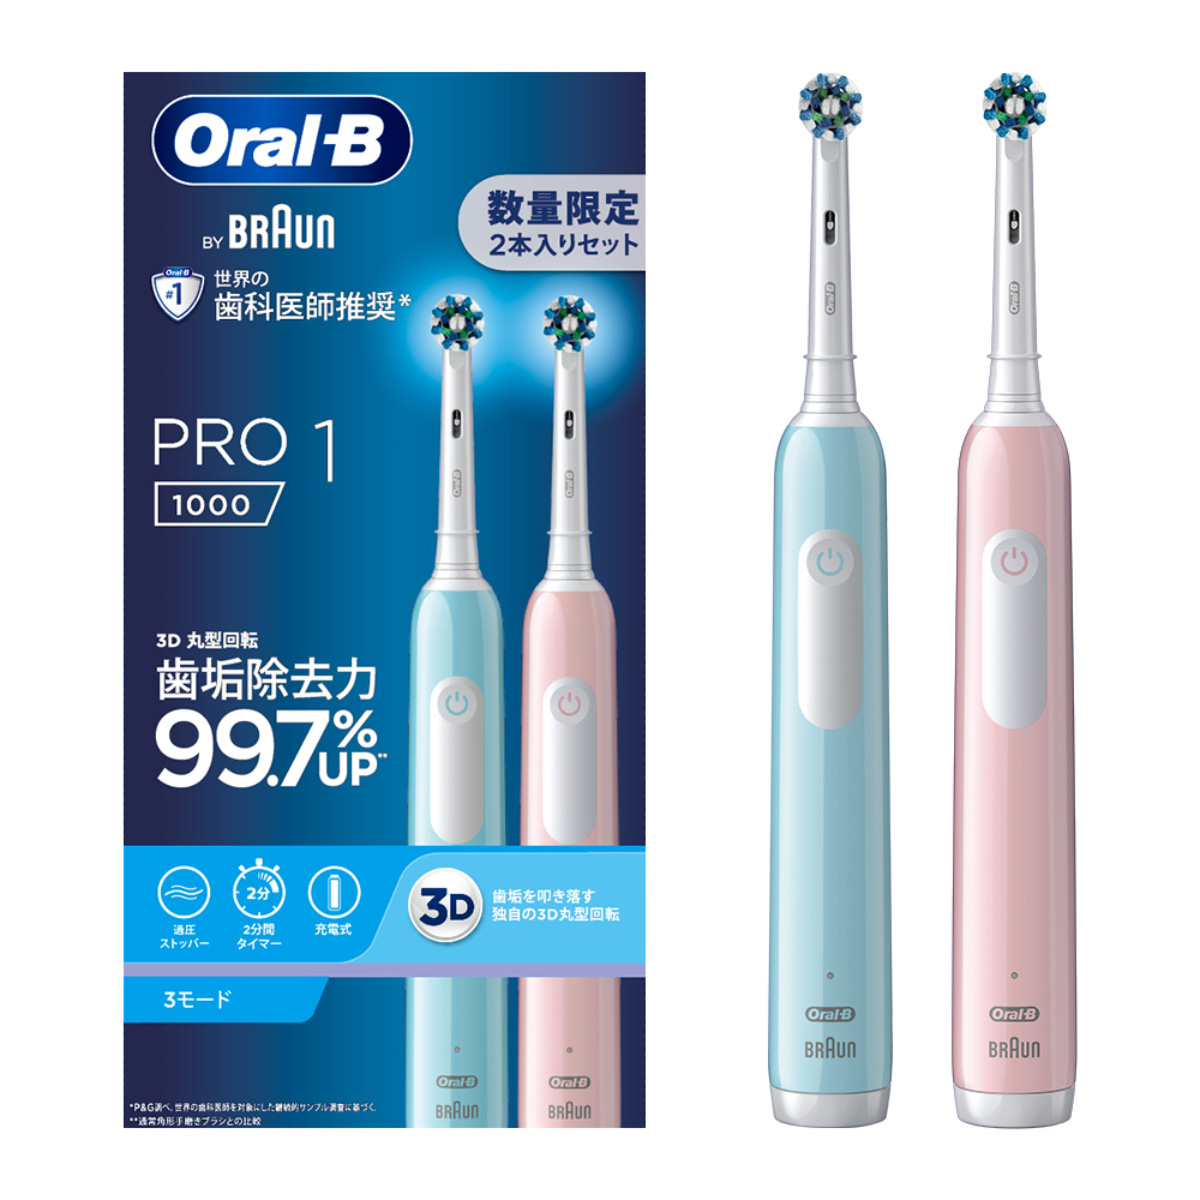 ひかりｔｖショッピング Oral B By Braun オーラルb 電動歯ブラシ Pro1 カリビアン ライトローズ 2本 Dcb Lr ブラウン